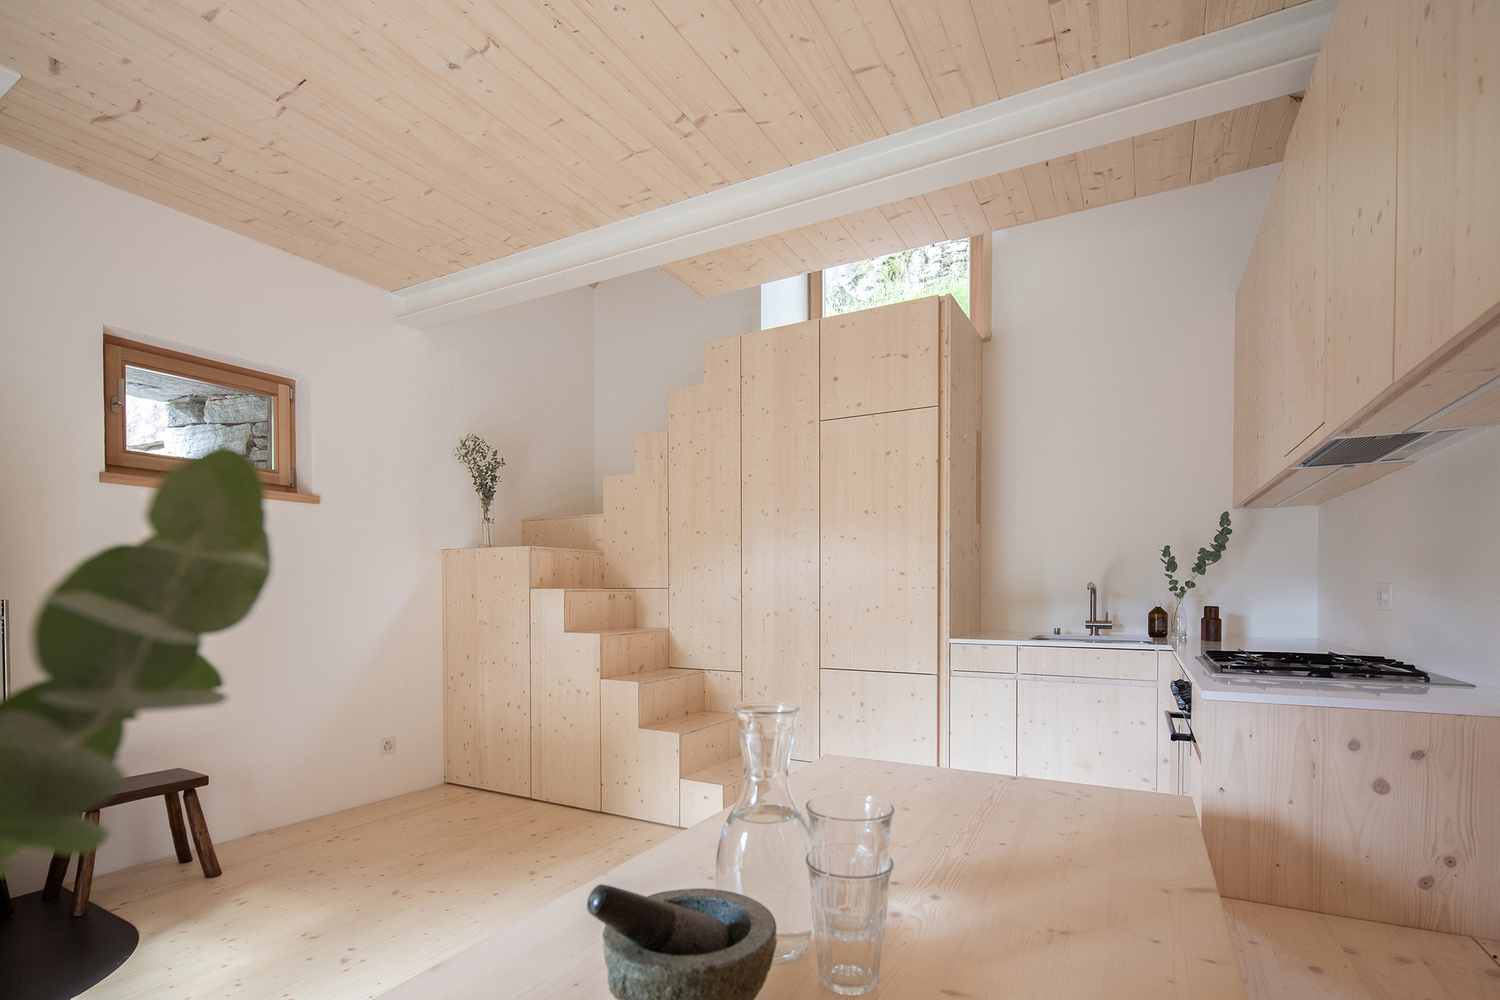 Cầu thang do Rafael Schmid Architekten thiết kế đóng vai trò như bộ tủ khép kín với bề mặt gỗ tươi sáng tương tự nội thất phòng bếp, tạo ra khu vực tích hợp độc đáo.